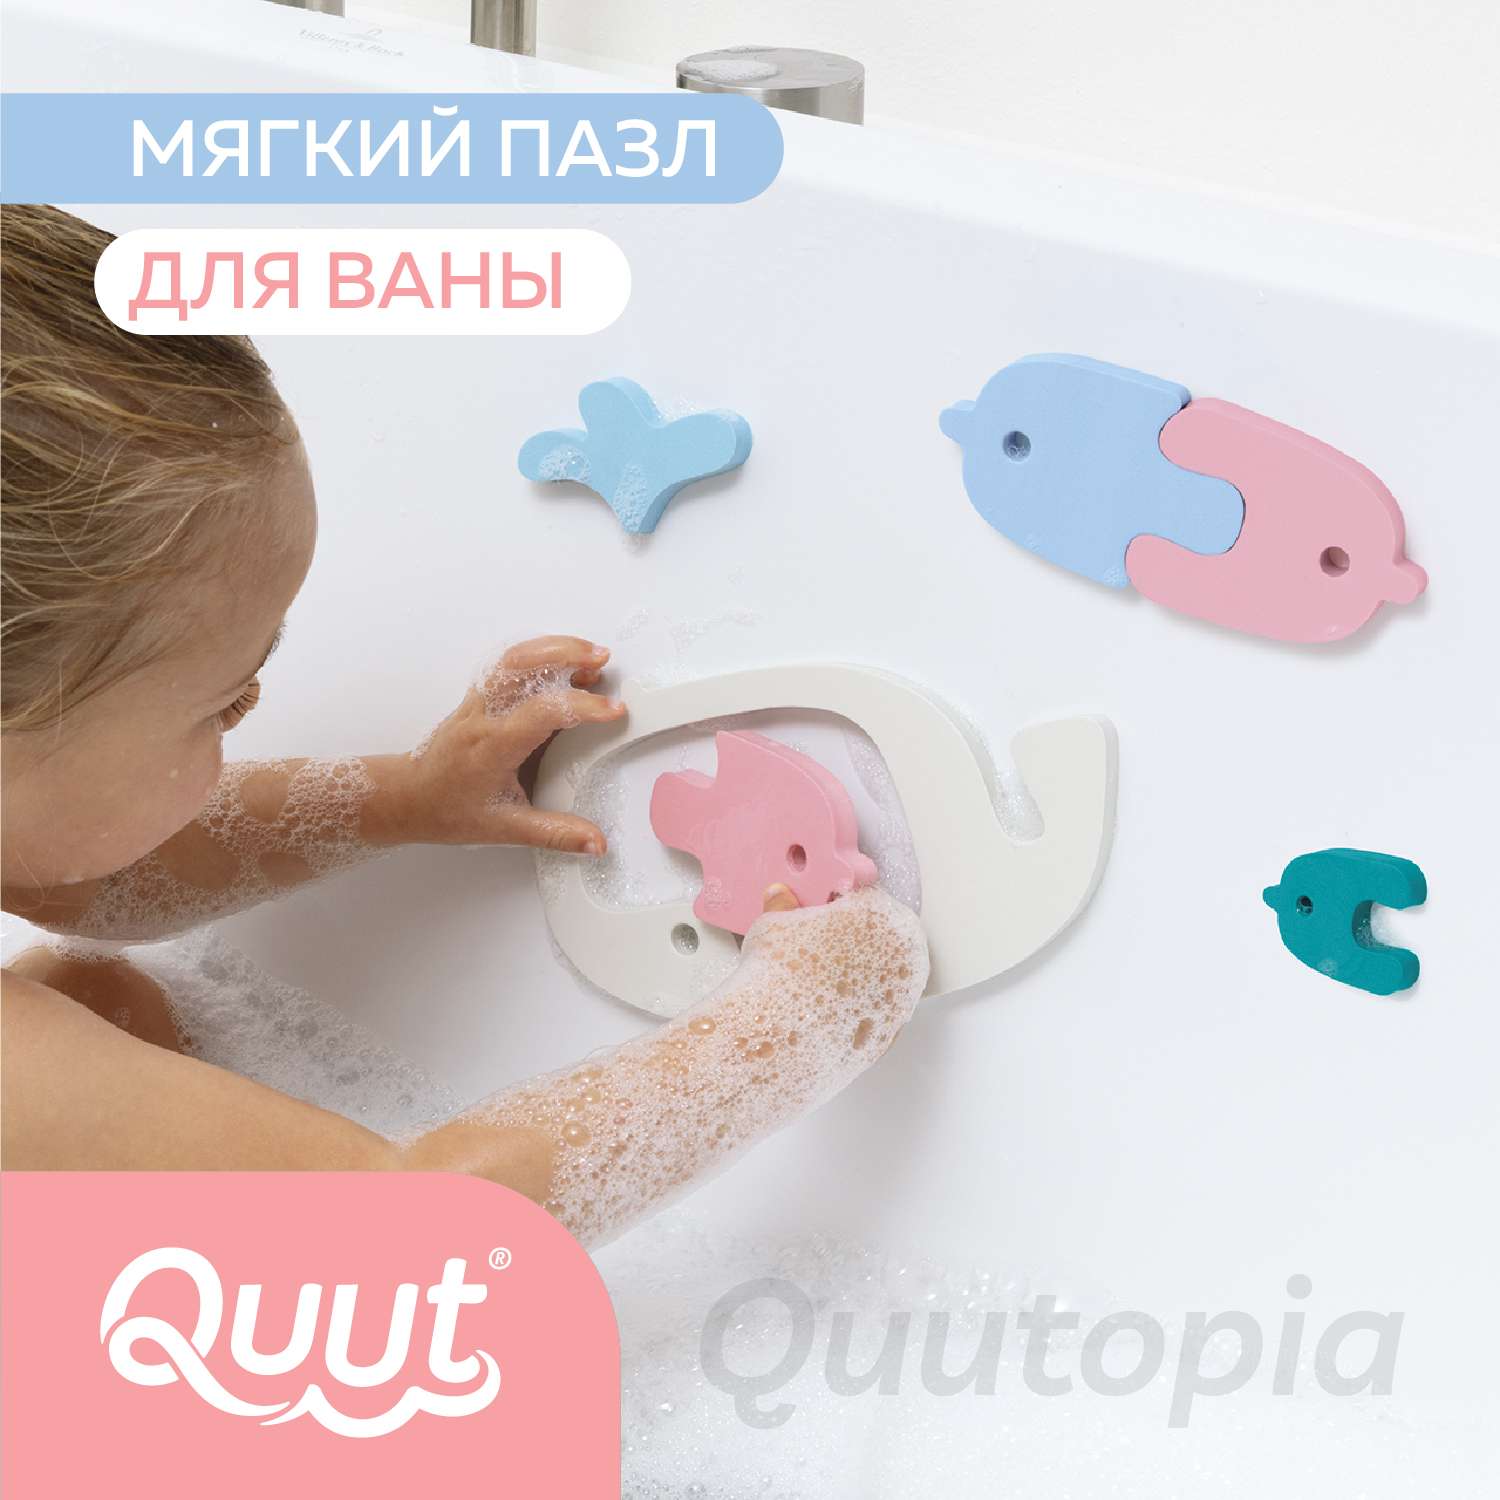 Пазл 2D QUUT мягкий для игры в ванне Quutopia Киты 11 элементов - фото 2